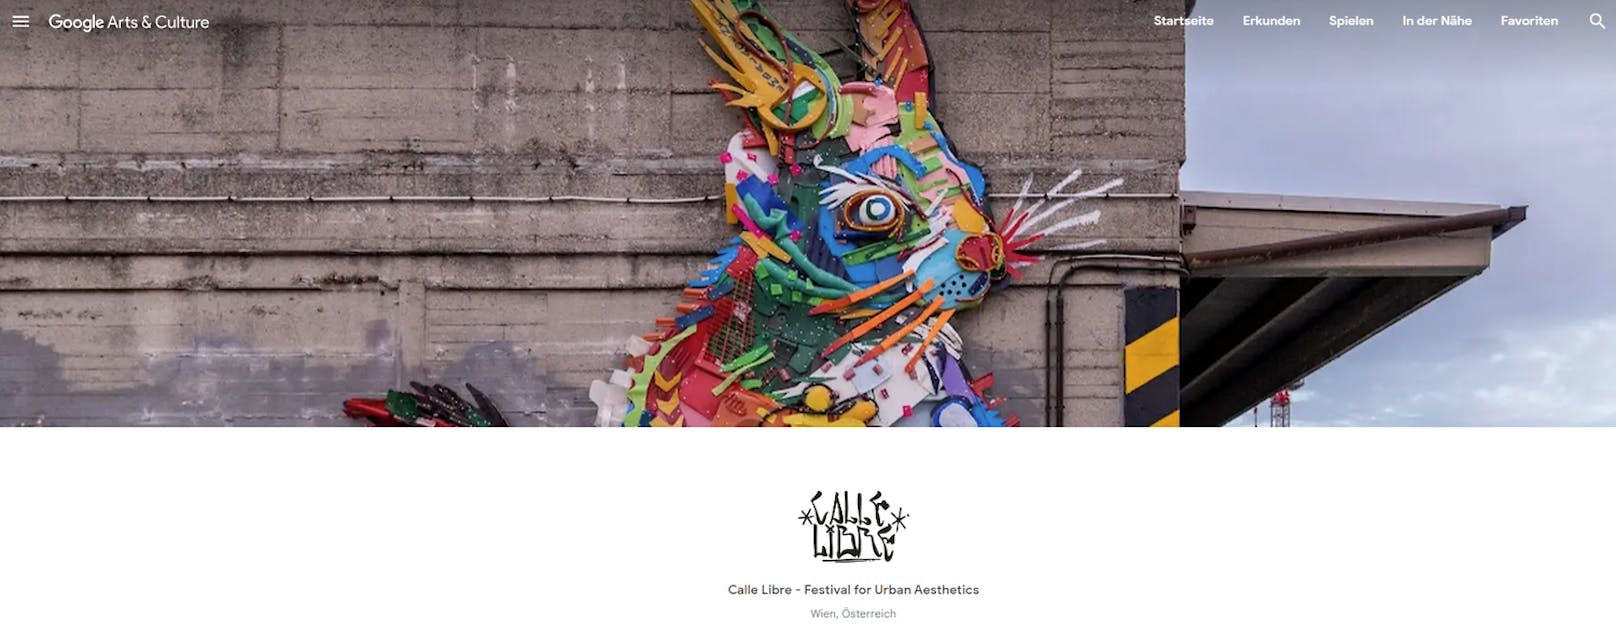 Calle Libre feiert zehnjähriges Jubiläum mit Online-Ausstellungen auf Google Arts & Culture.